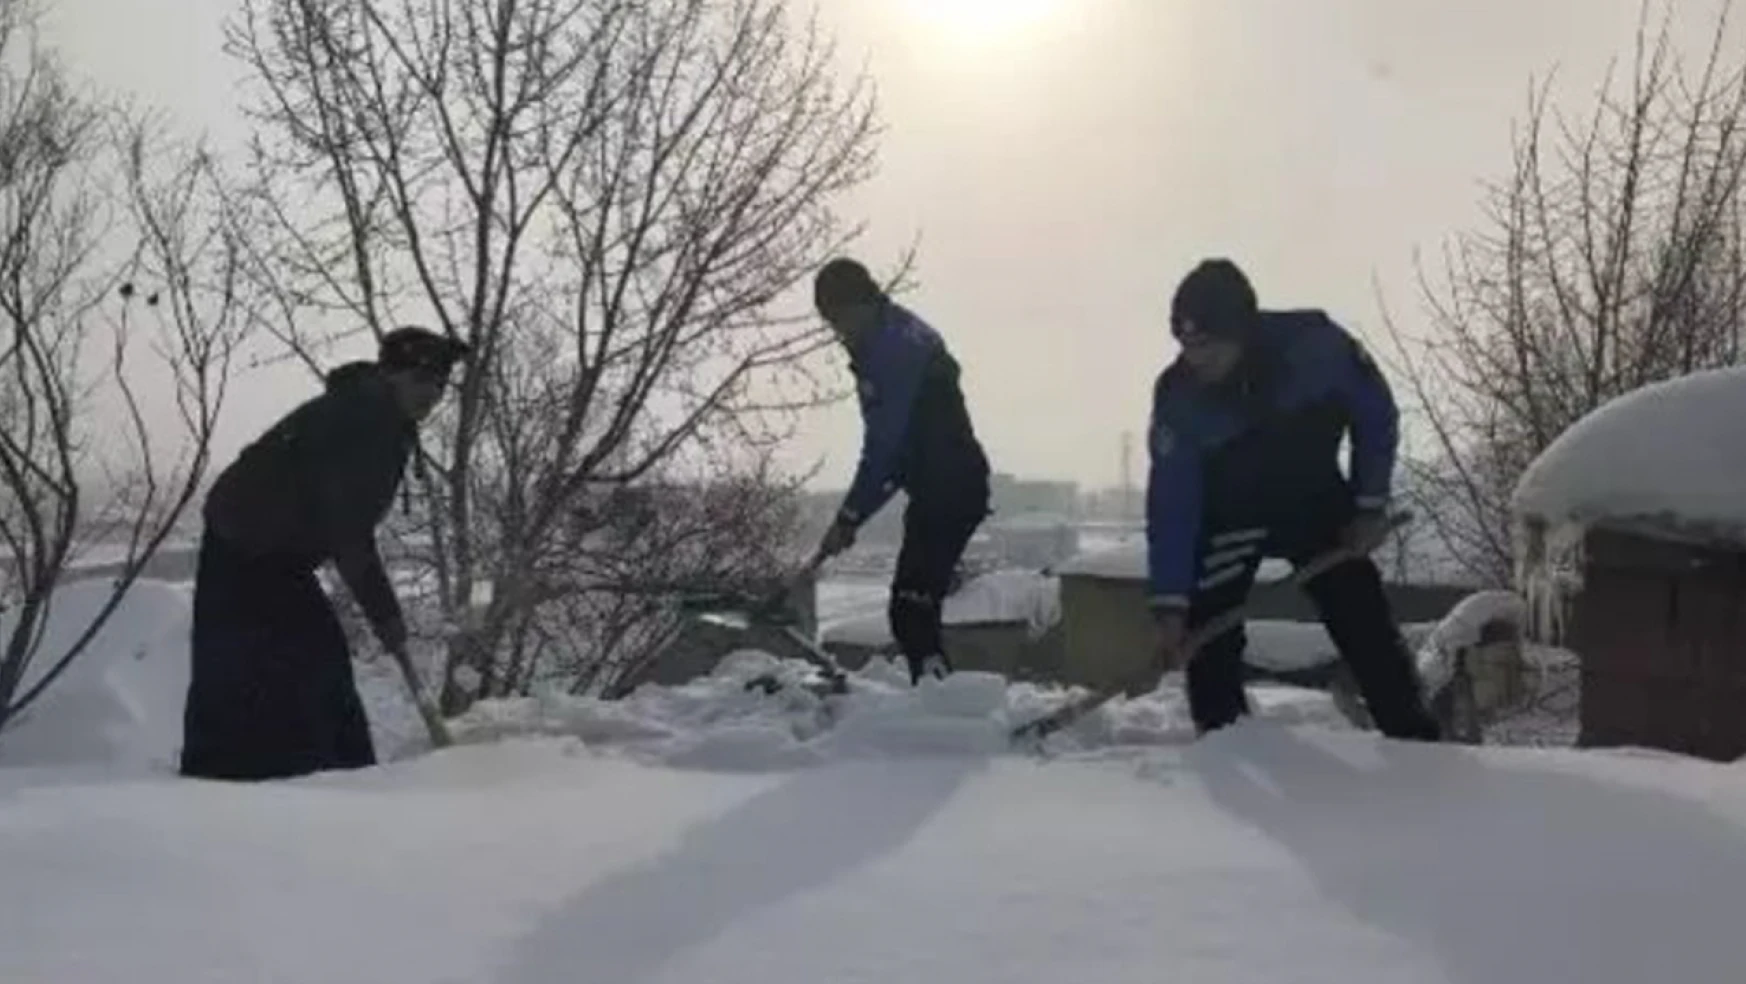 Toprak evinin damını kardan temizlemeye çalışan kadına, polis memurları yardım etti